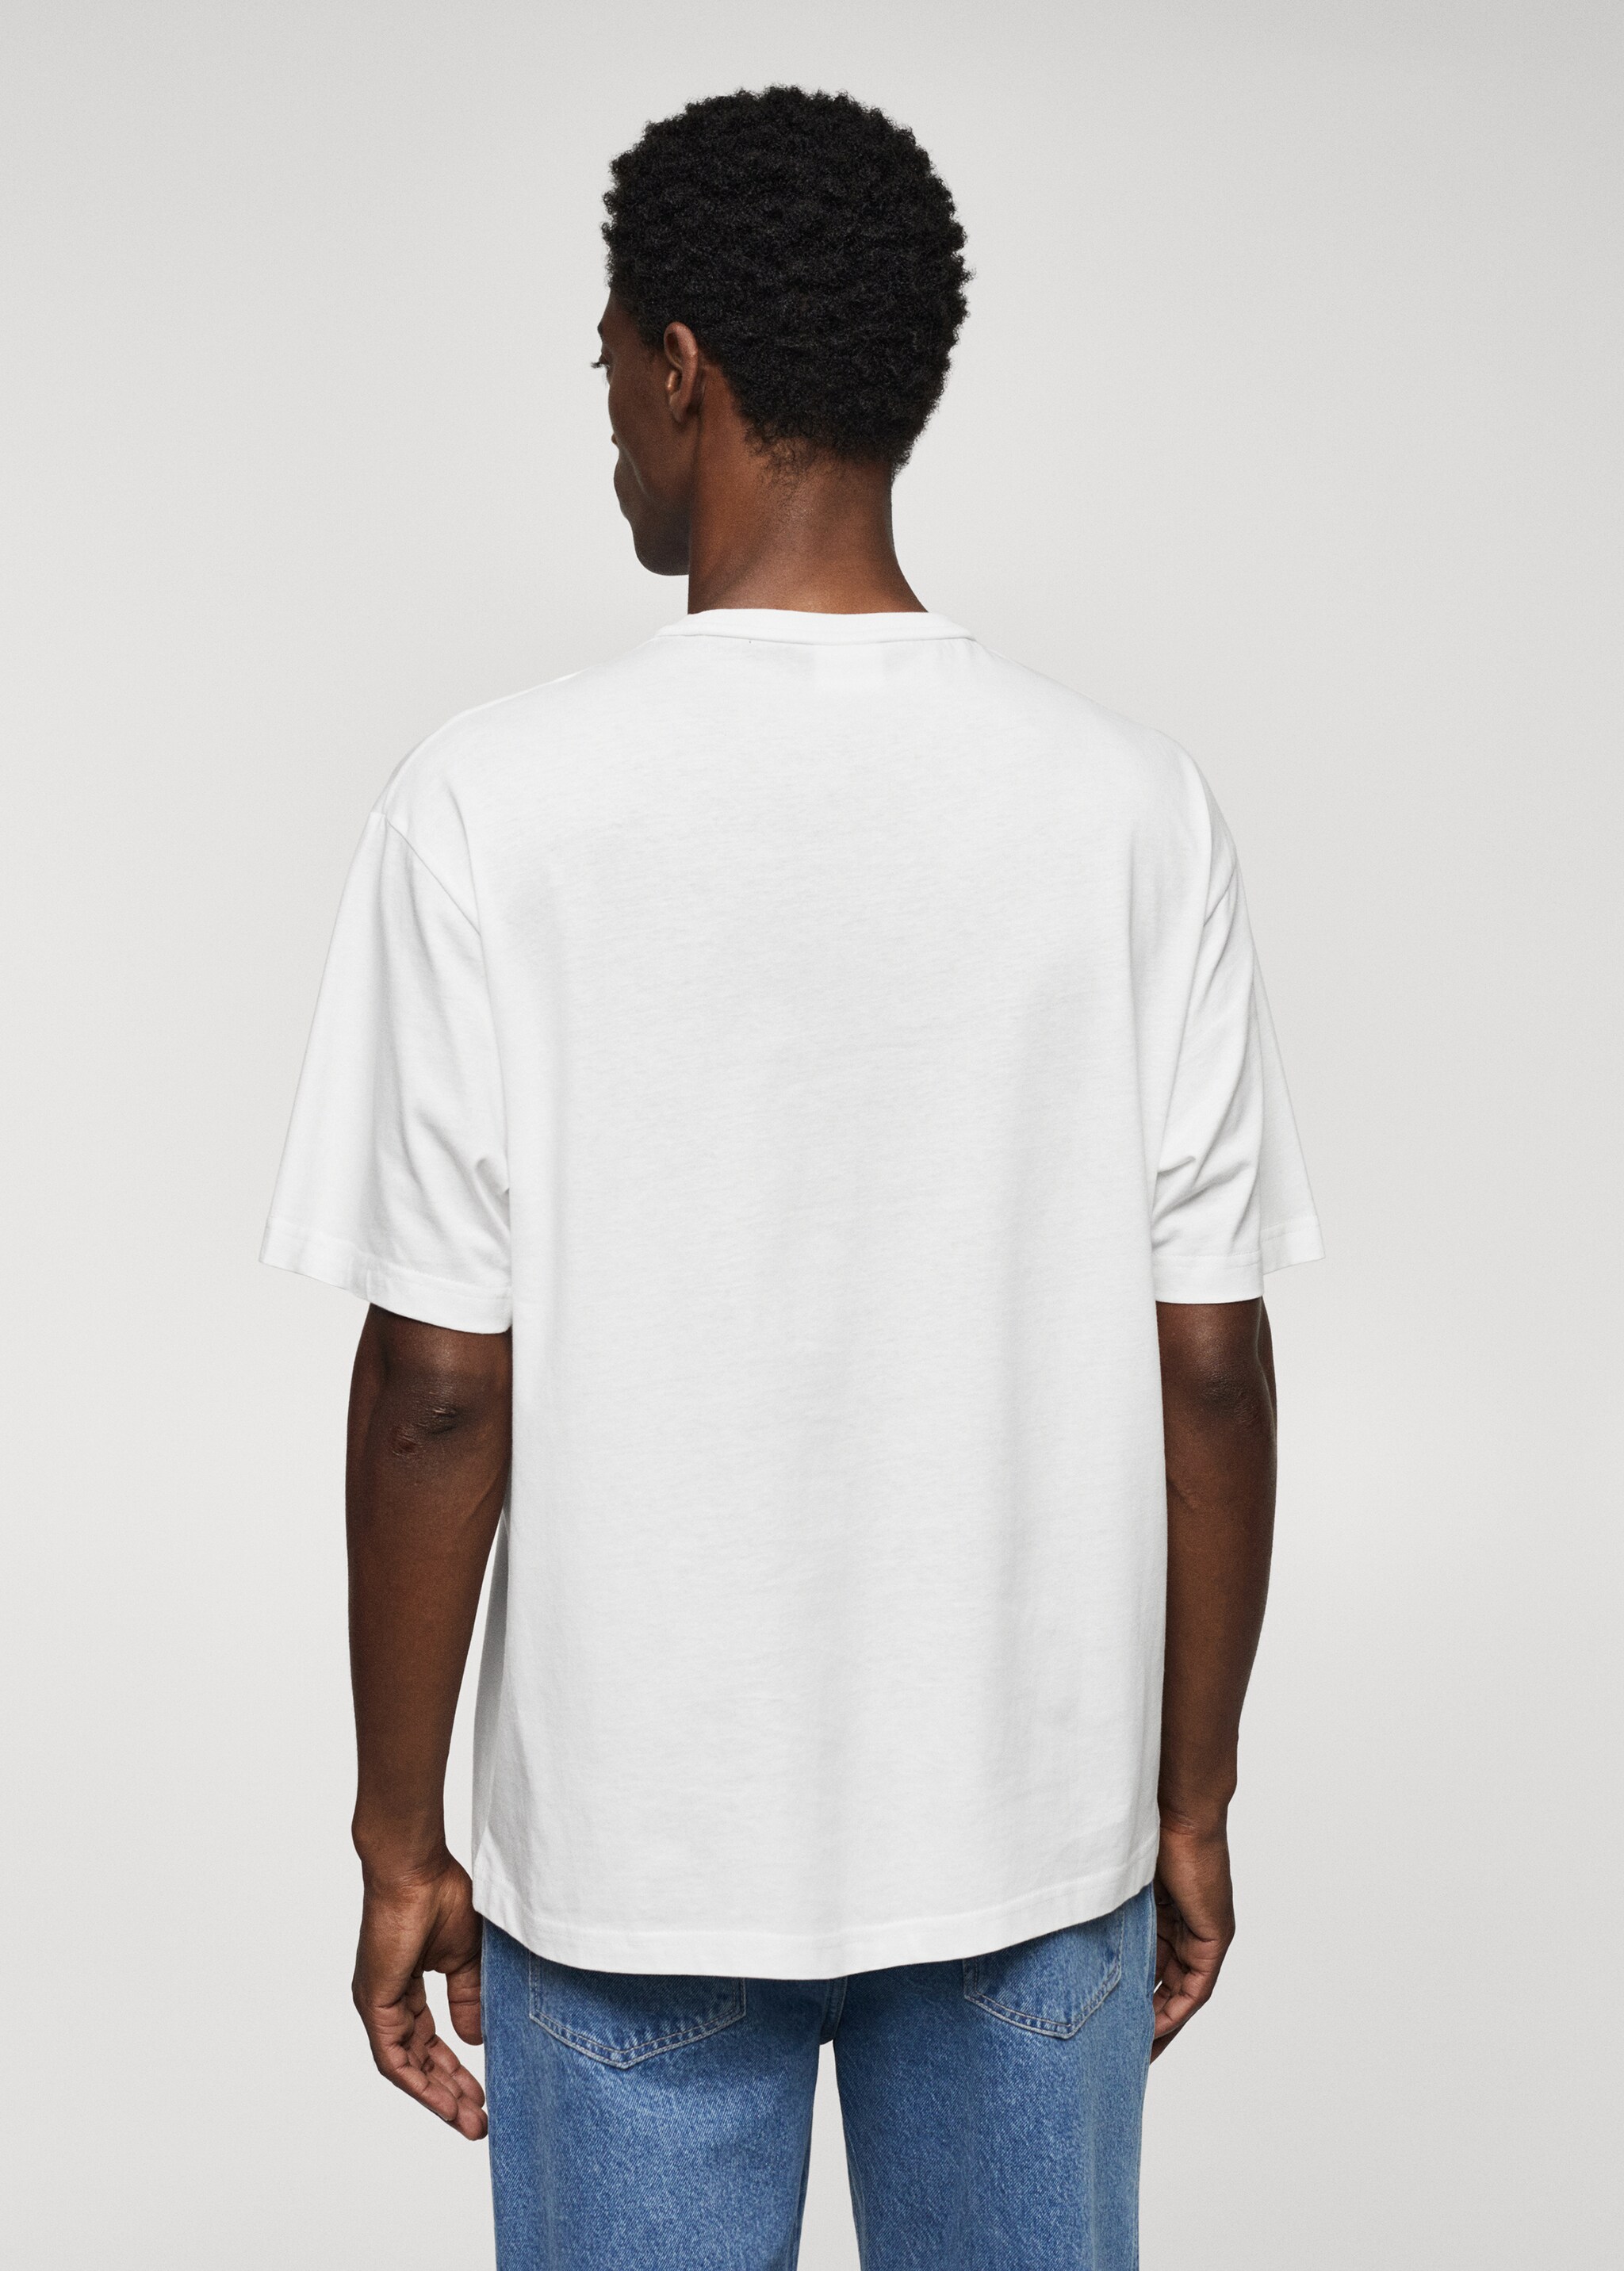 Camiseta 100% algodón relaxed fit - Reverso del artículo